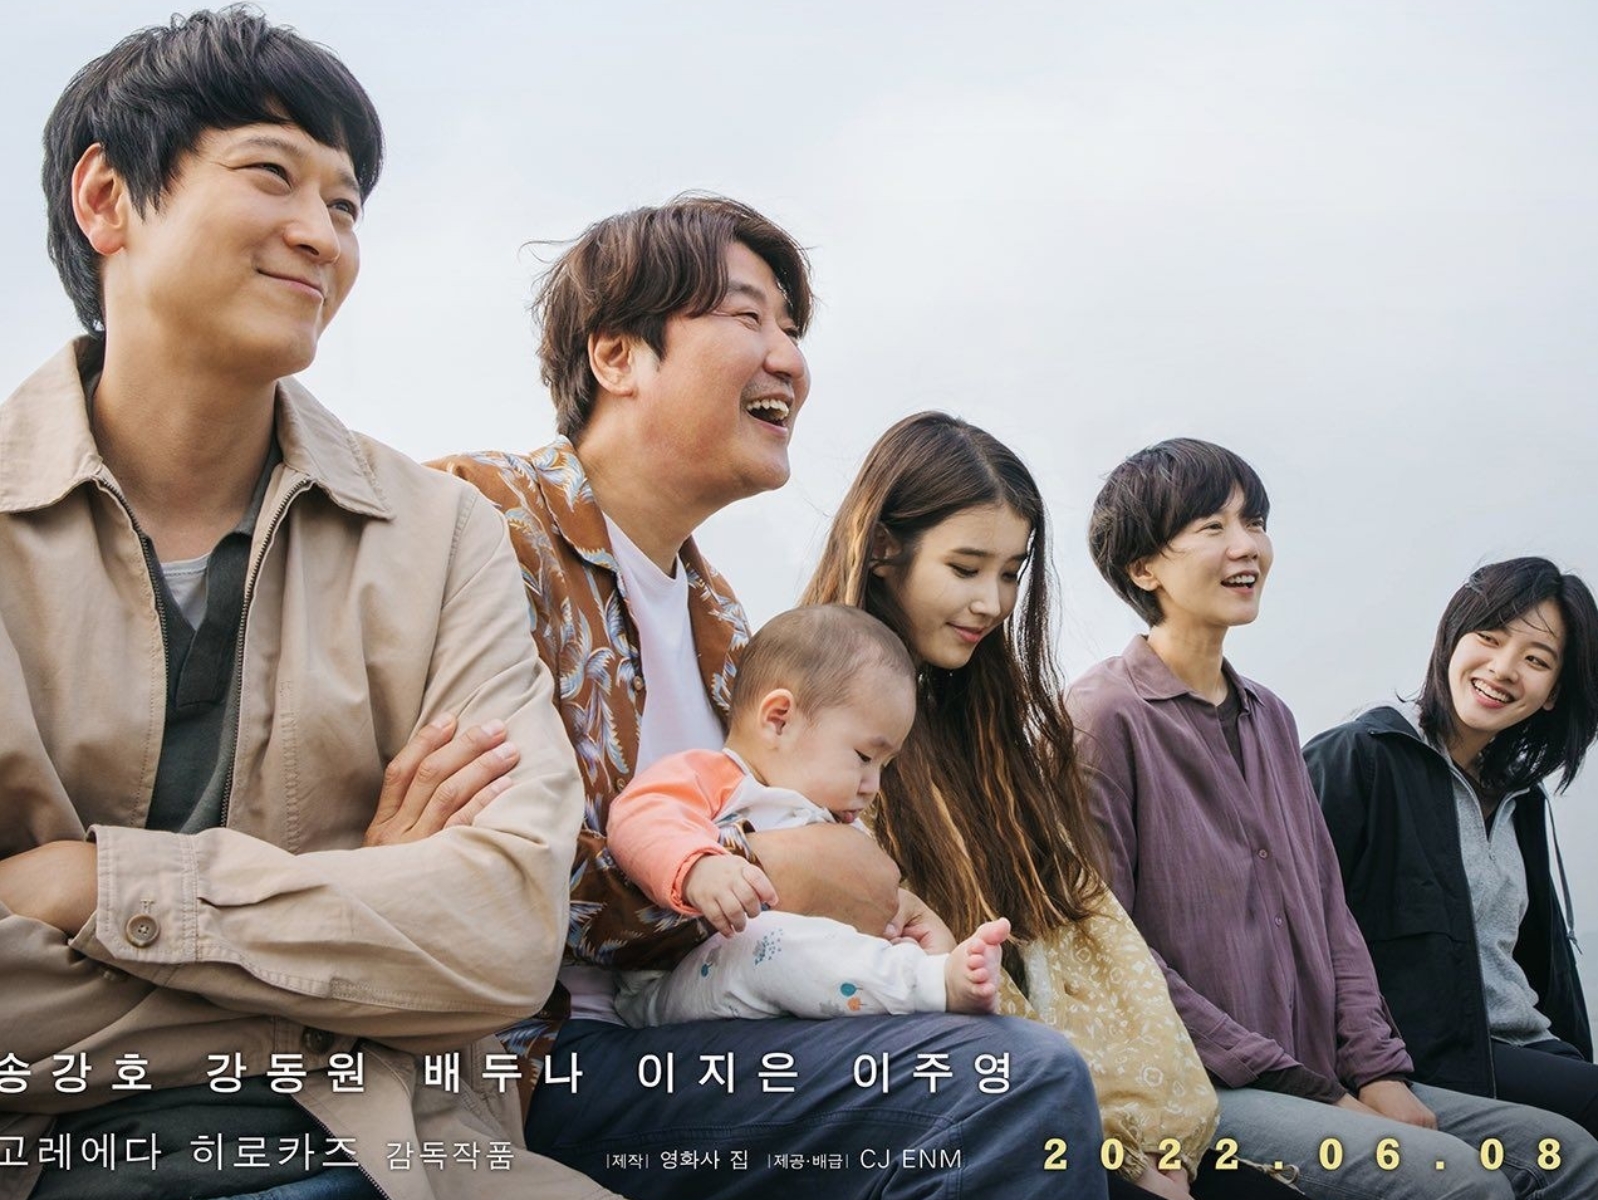 是枝裕和首部韓國電影《嬰兒轉運站 Broker》5 件必知看點！IU、宋康昊主演、棄嬰箱爭議入題！